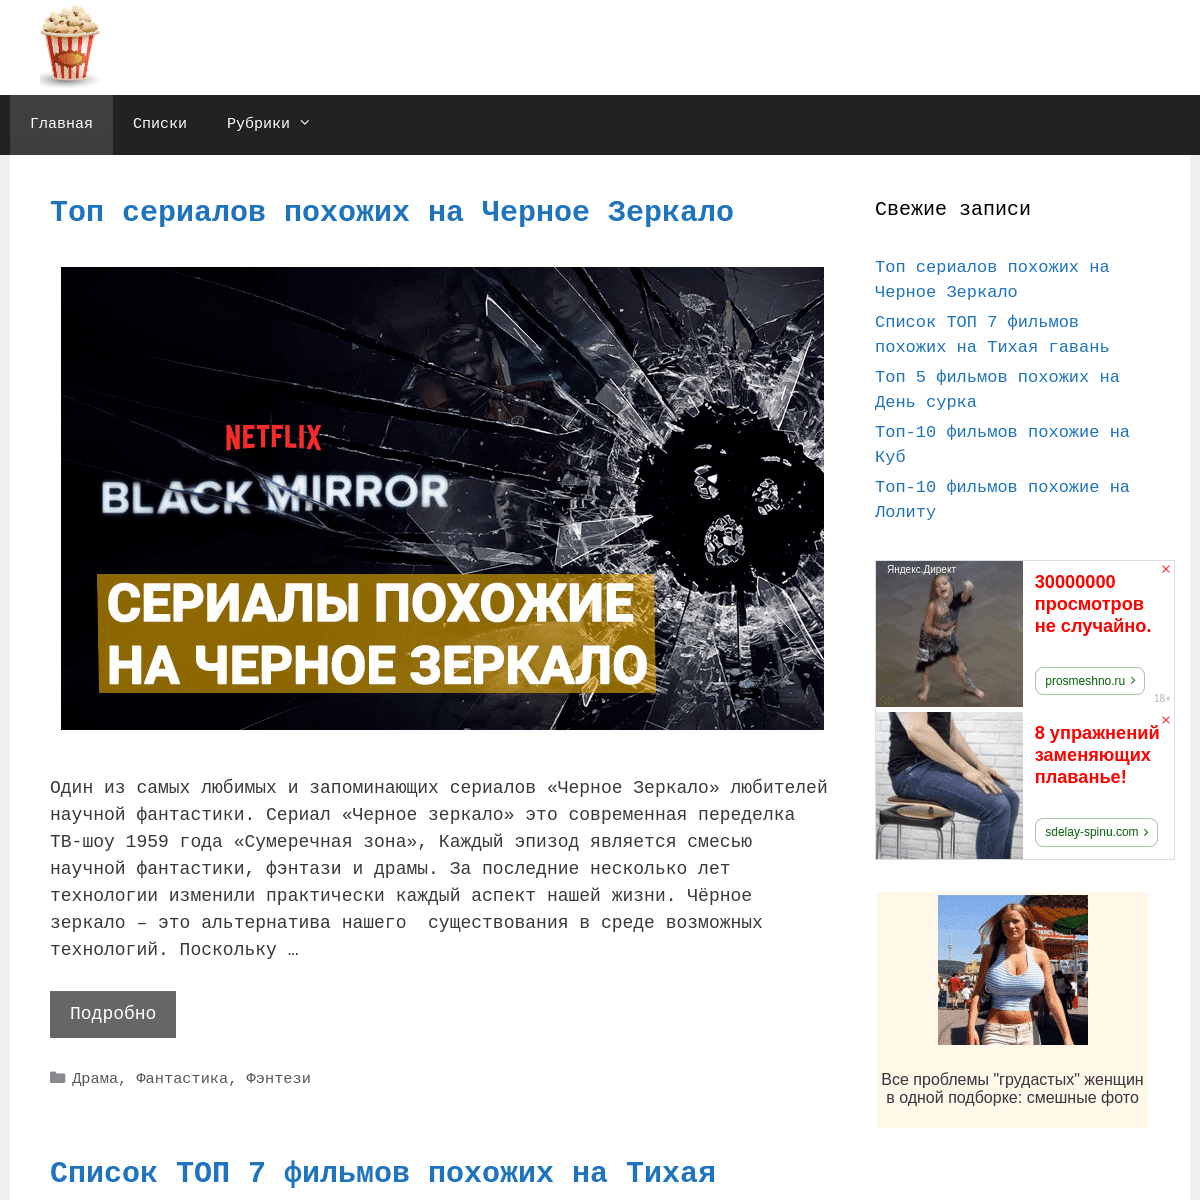 A complete backup of filmslikefinder.ru